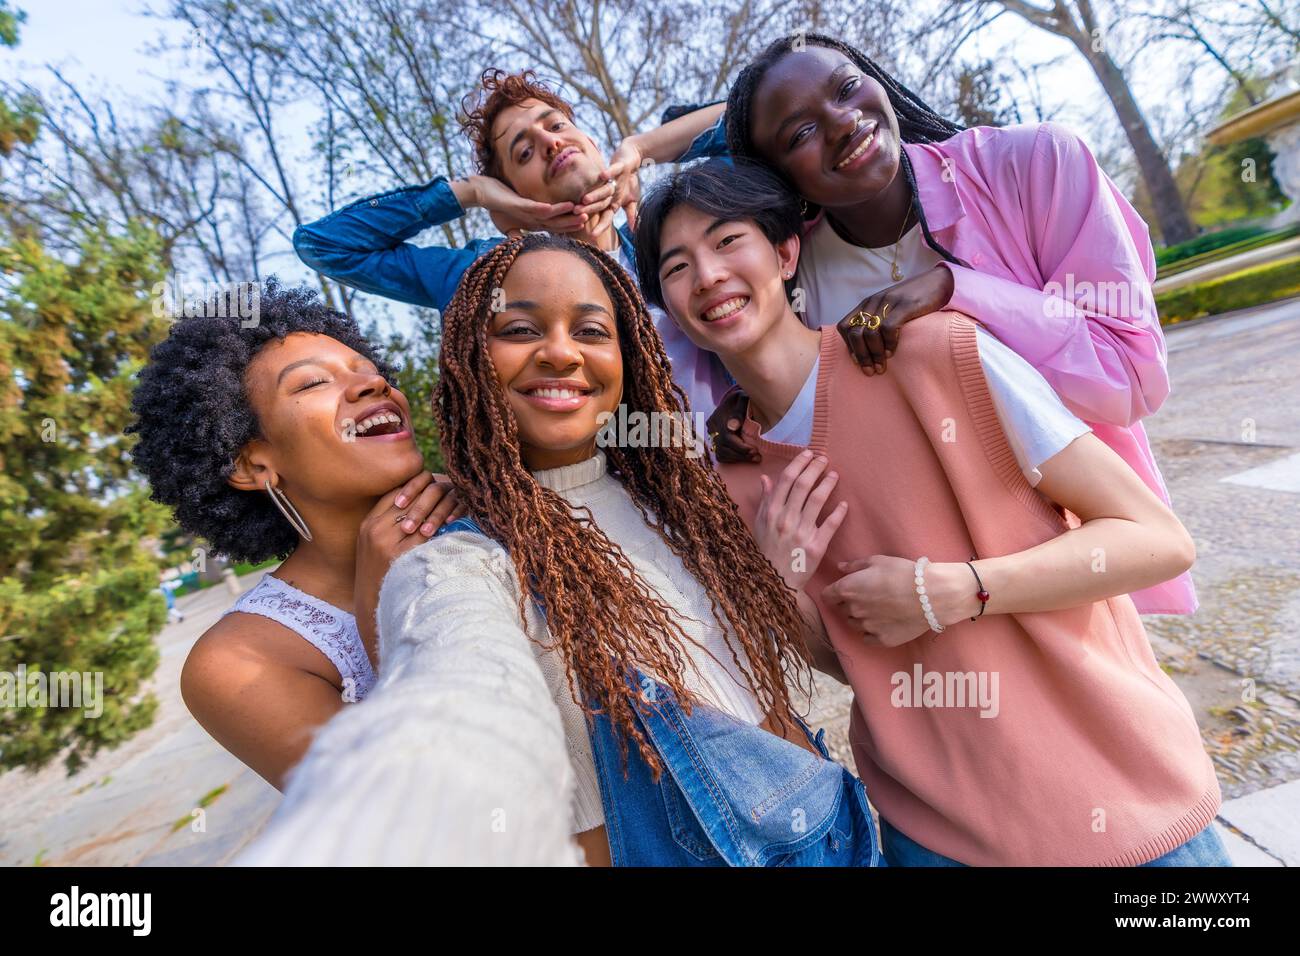 Persönliche Perspektive von fünf multiethnischen jungen Freunden, die Scherze machen, während sie ein Selfie in einem Stadtpark machen Stockfoto